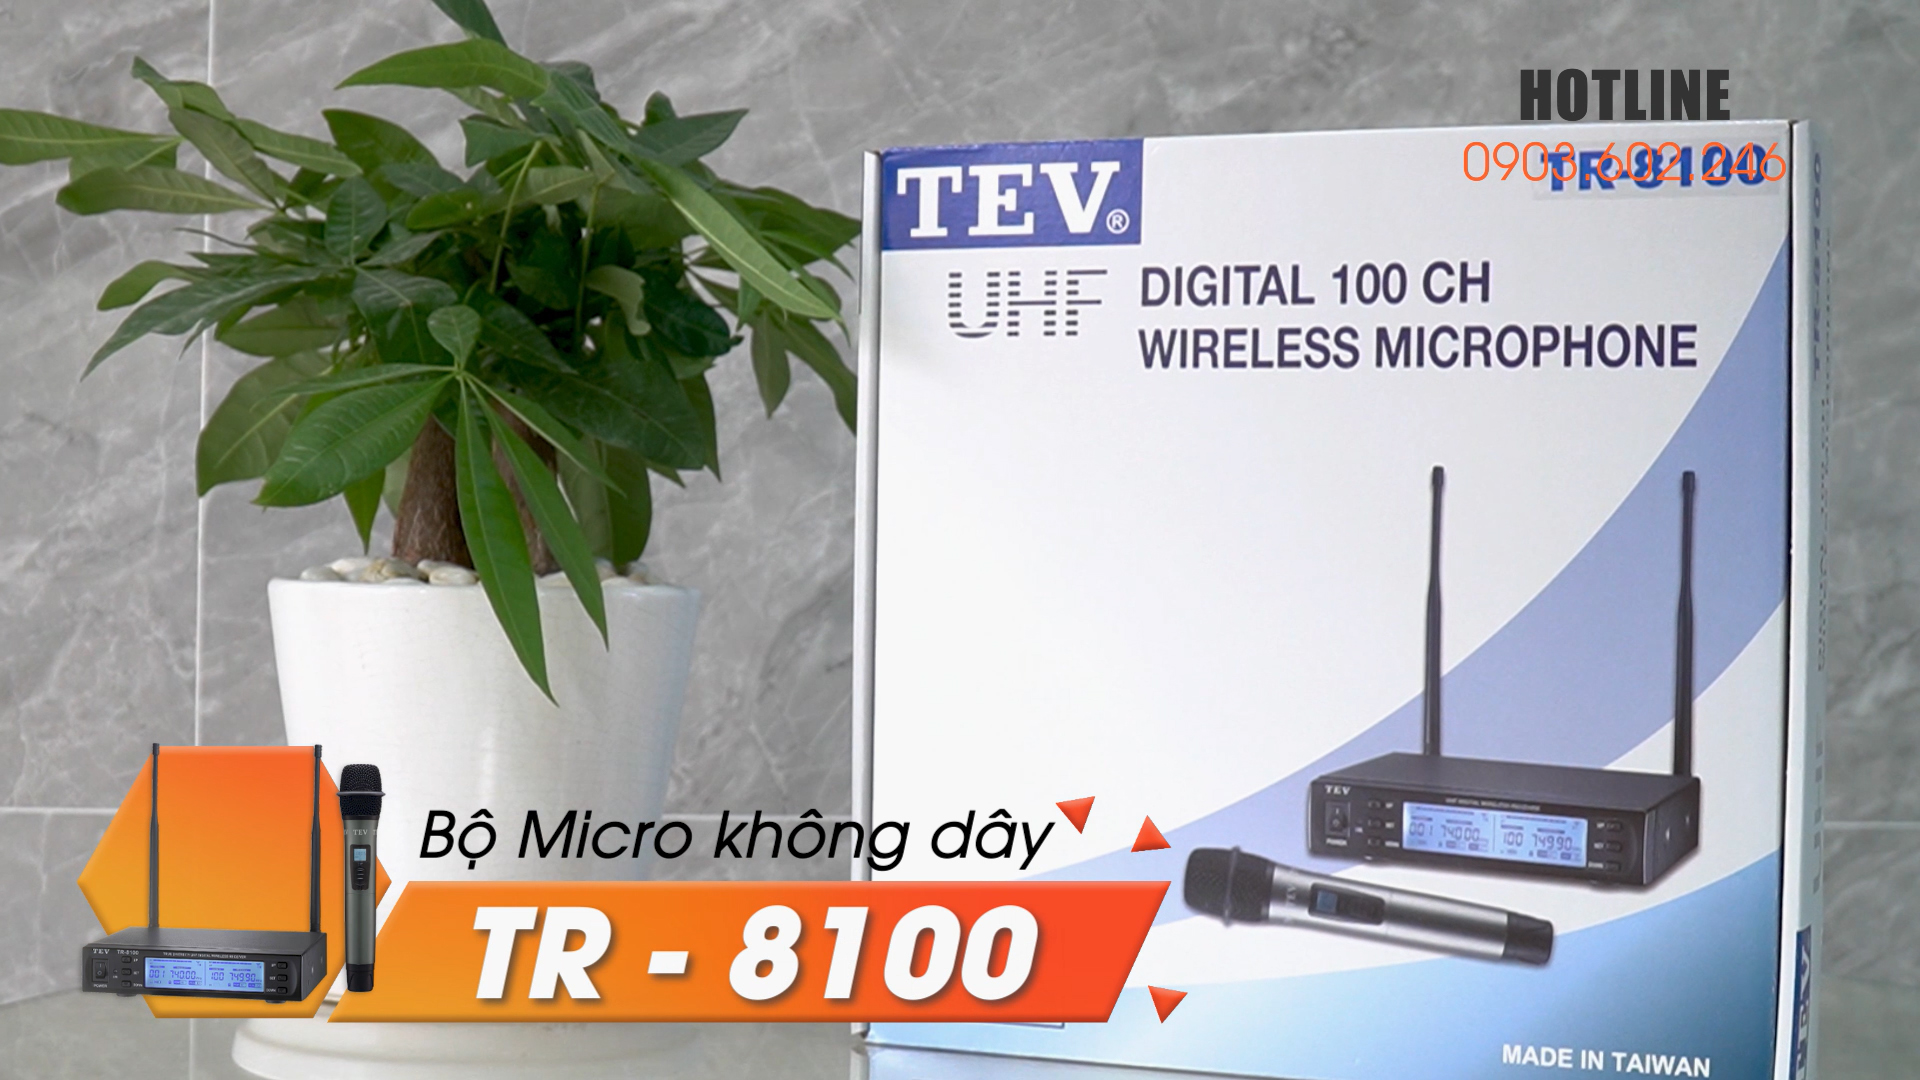 Bộ micro không dây một tay cầm TEV TR-8100